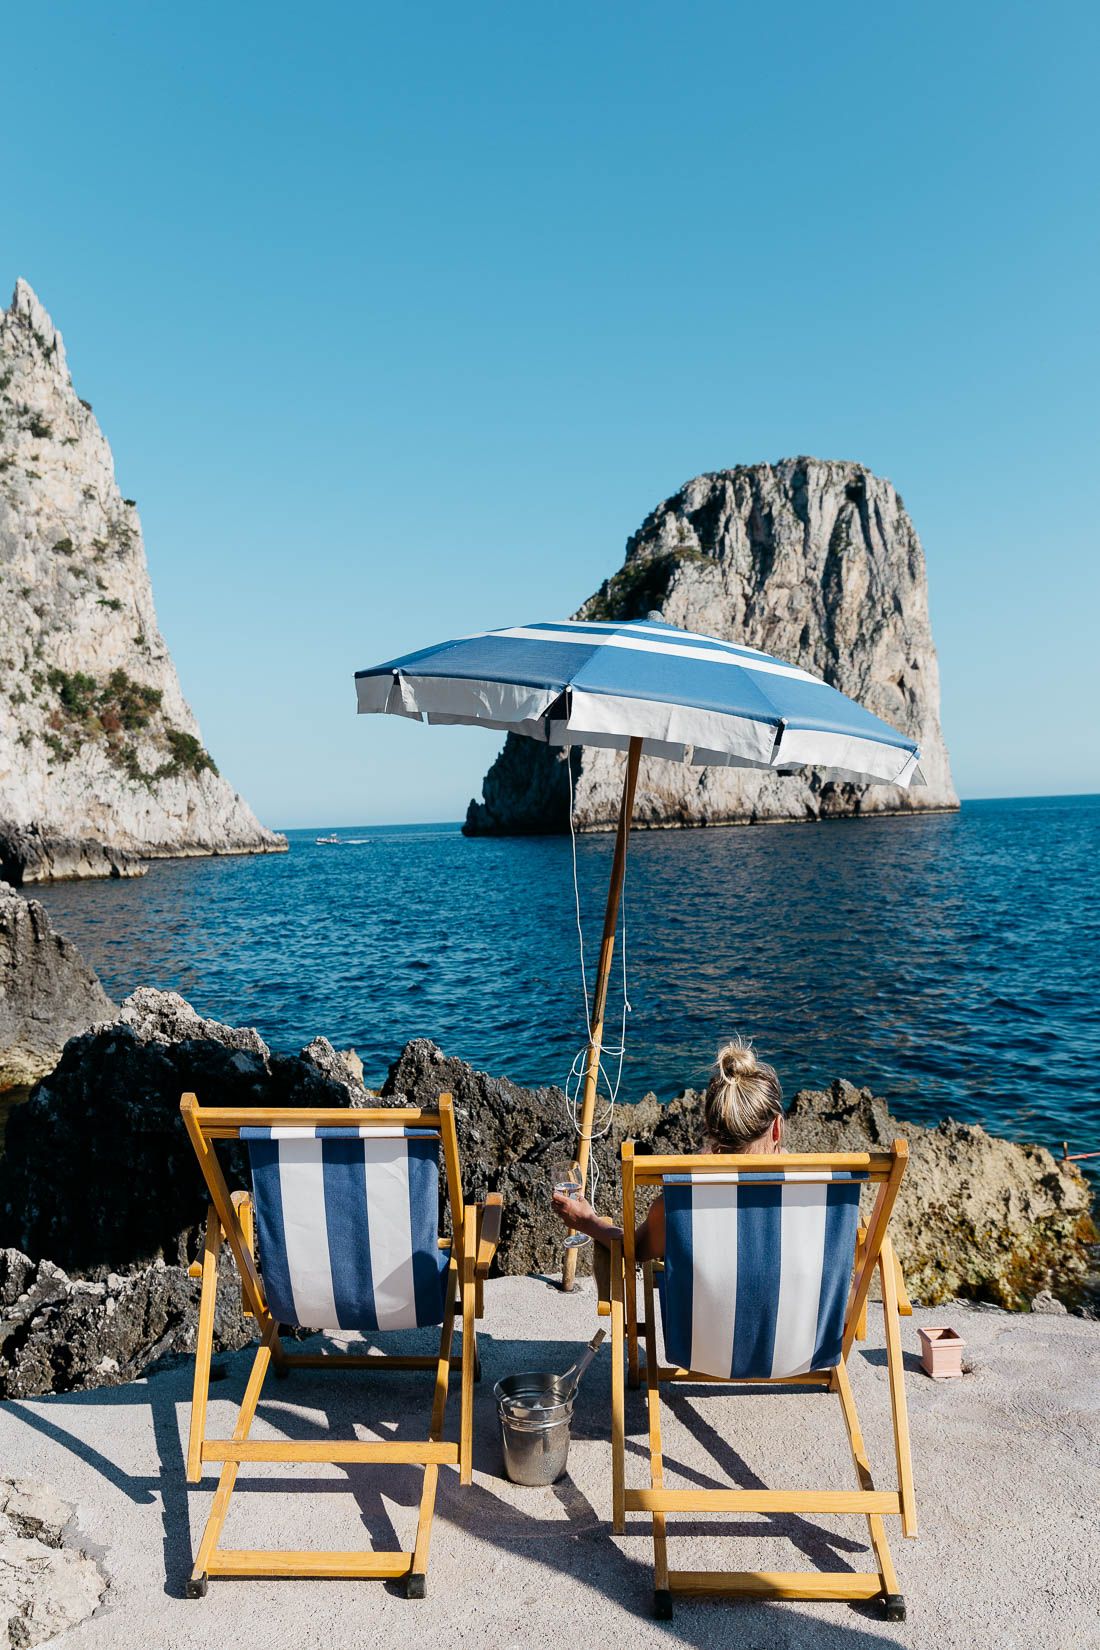 La luna di miele - Capri Travel Guide - Styled Snapshots